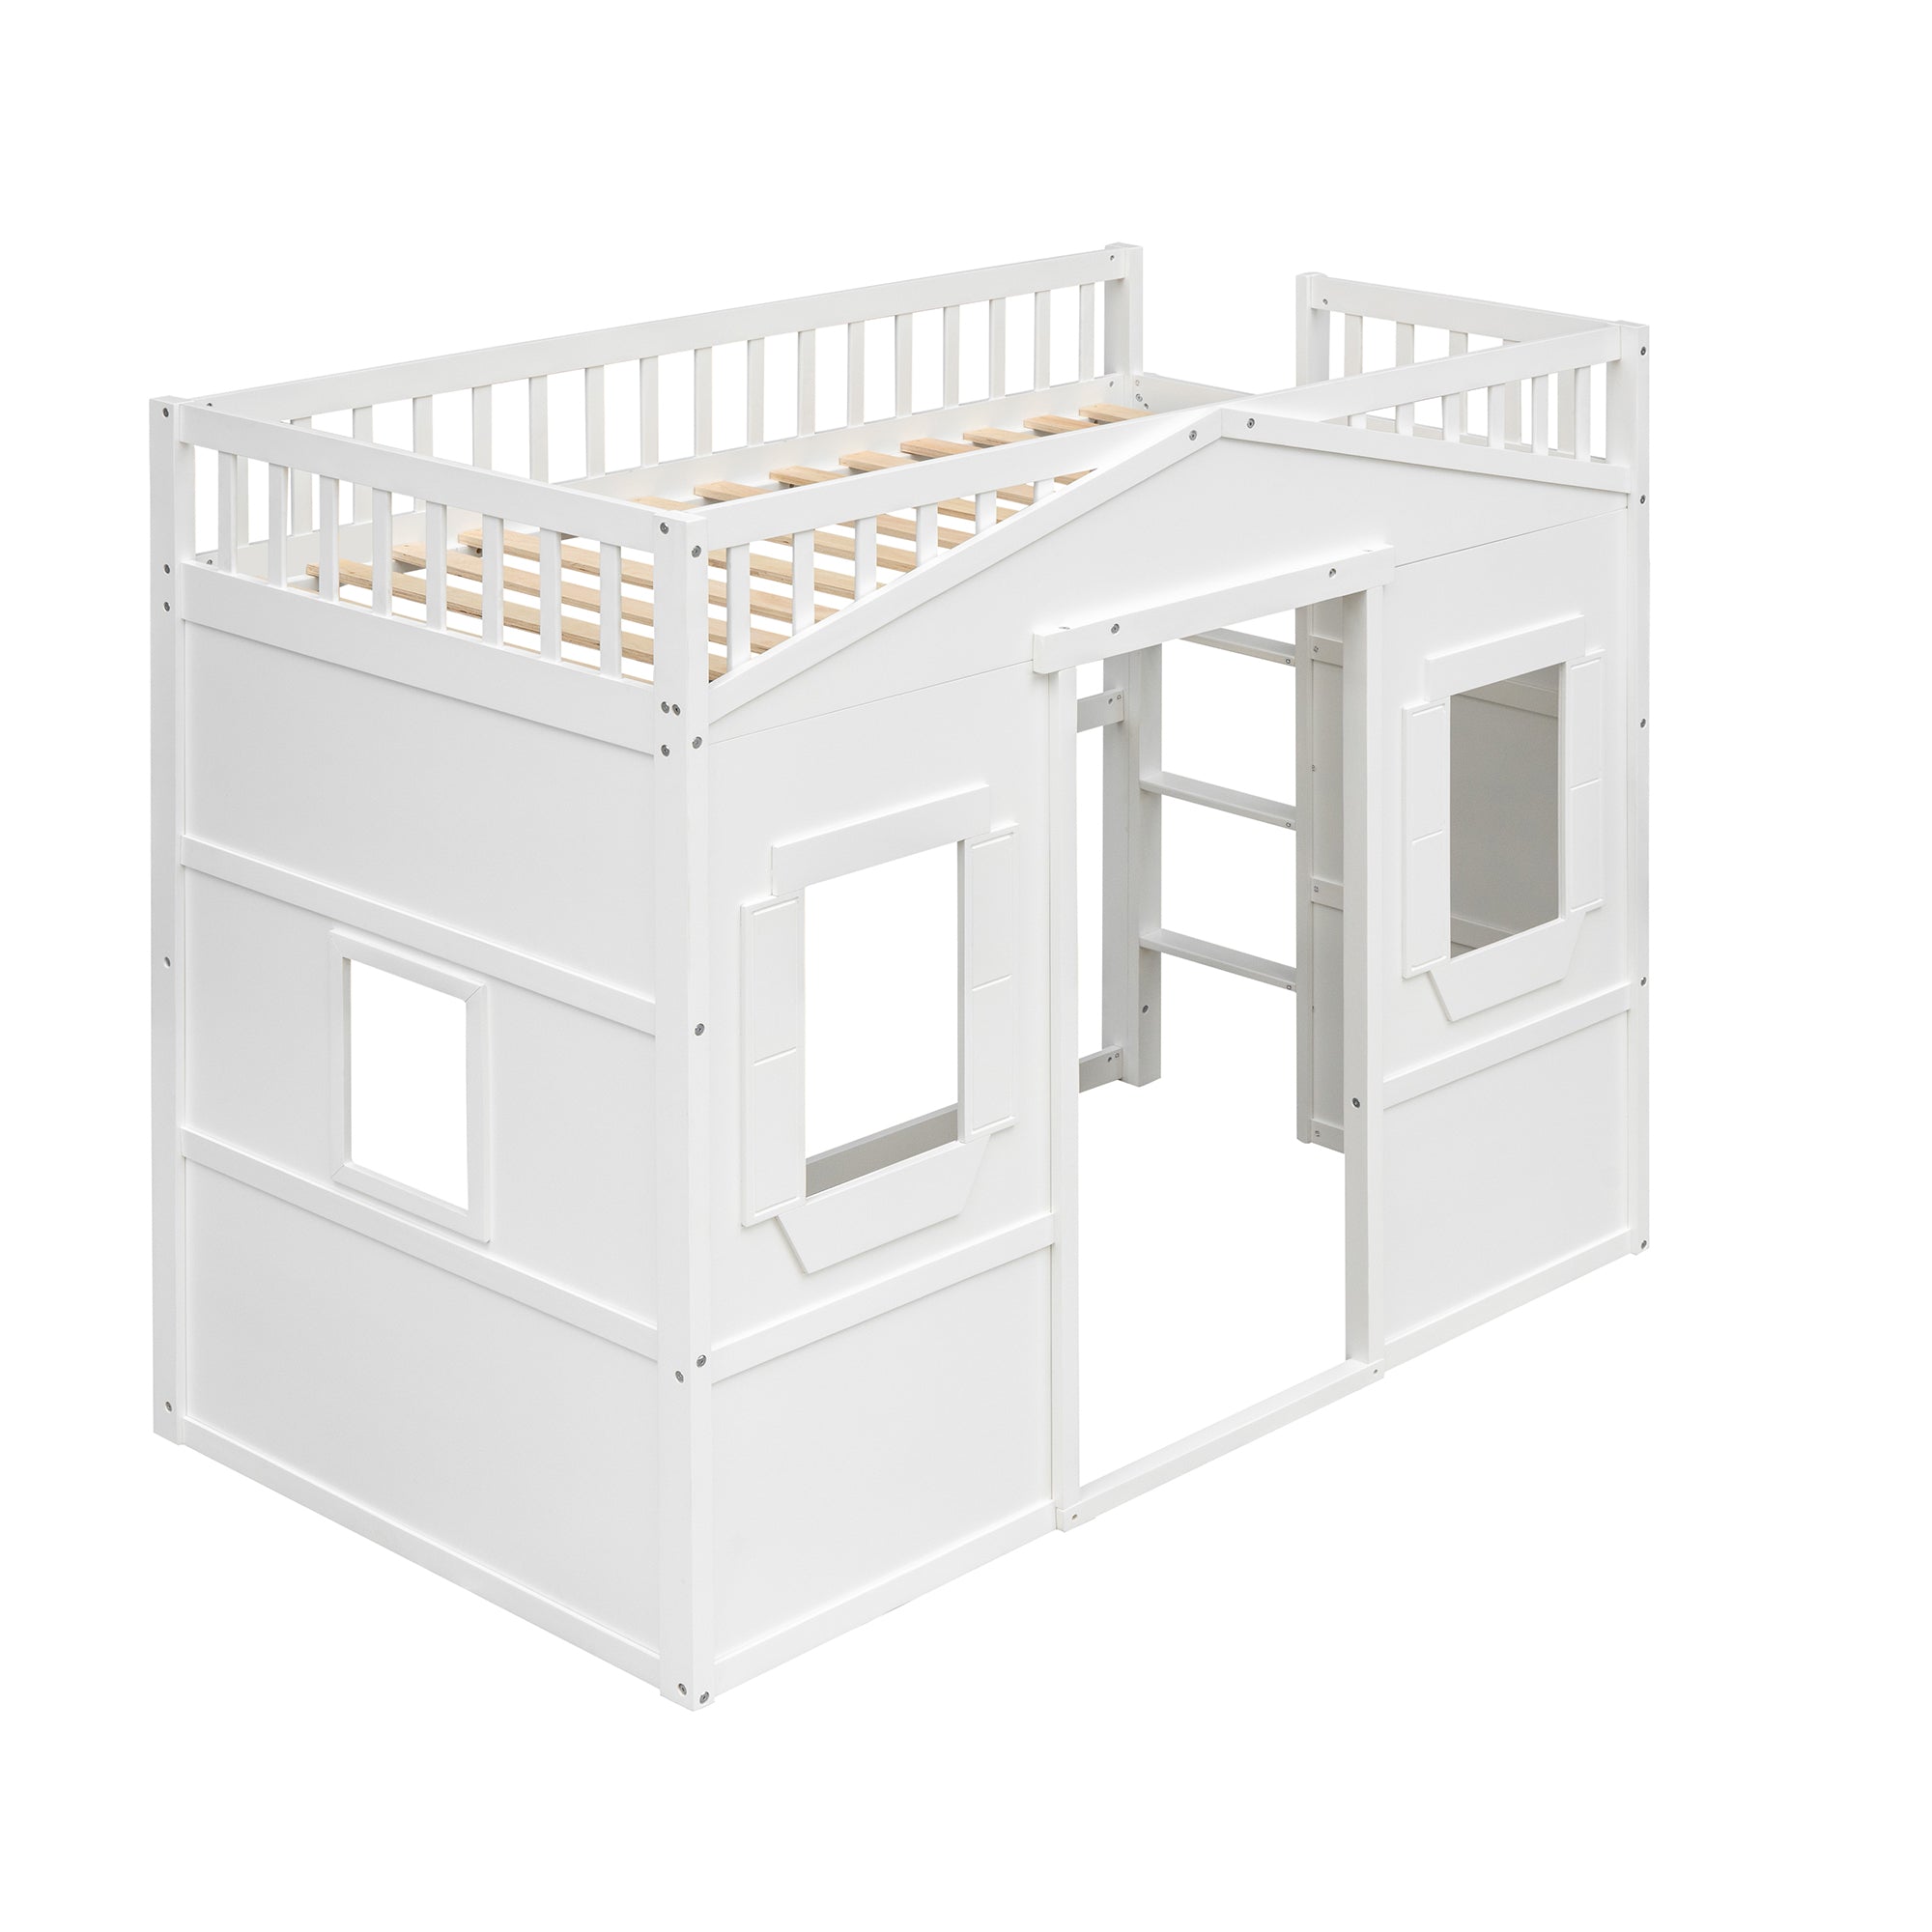 Bellemave® House Loft Bed with Ladder Bellemave®